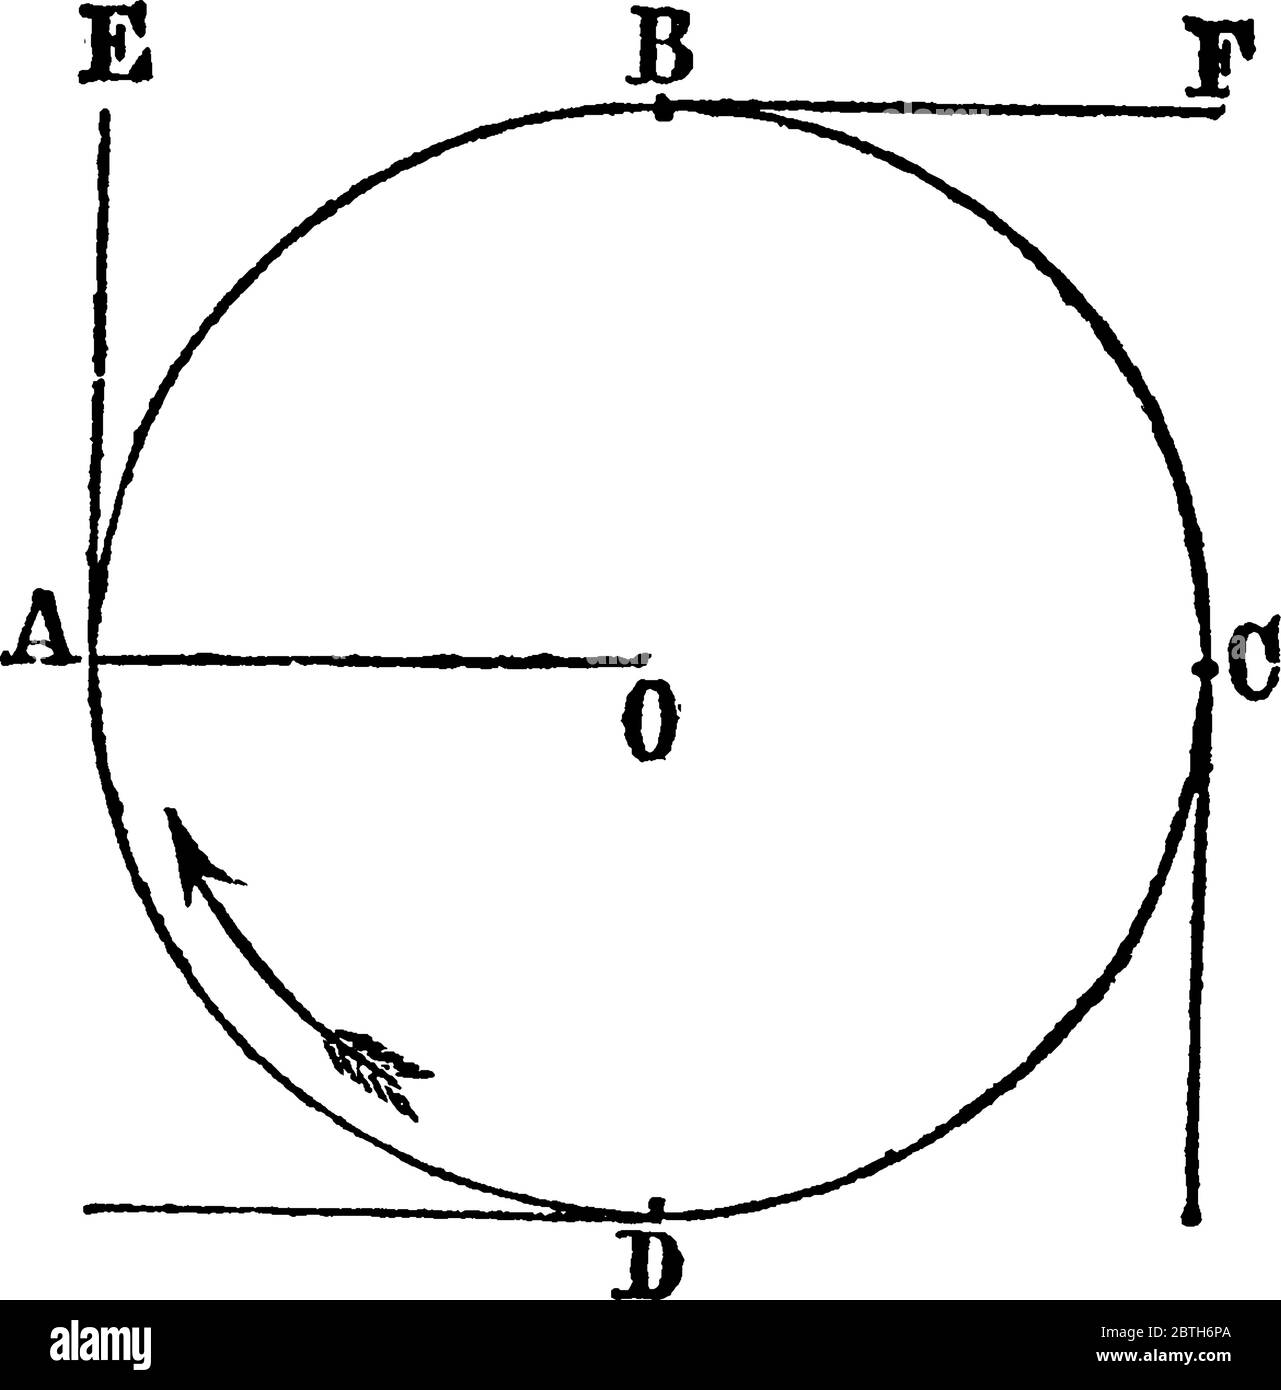 Una configurazione sperimentale per mostrare la forza centrifuga, l'istante in cui si lascia andare la corda, la forza centrifuga fa scendere la pietra in una tange Illustrazione Vettoriale